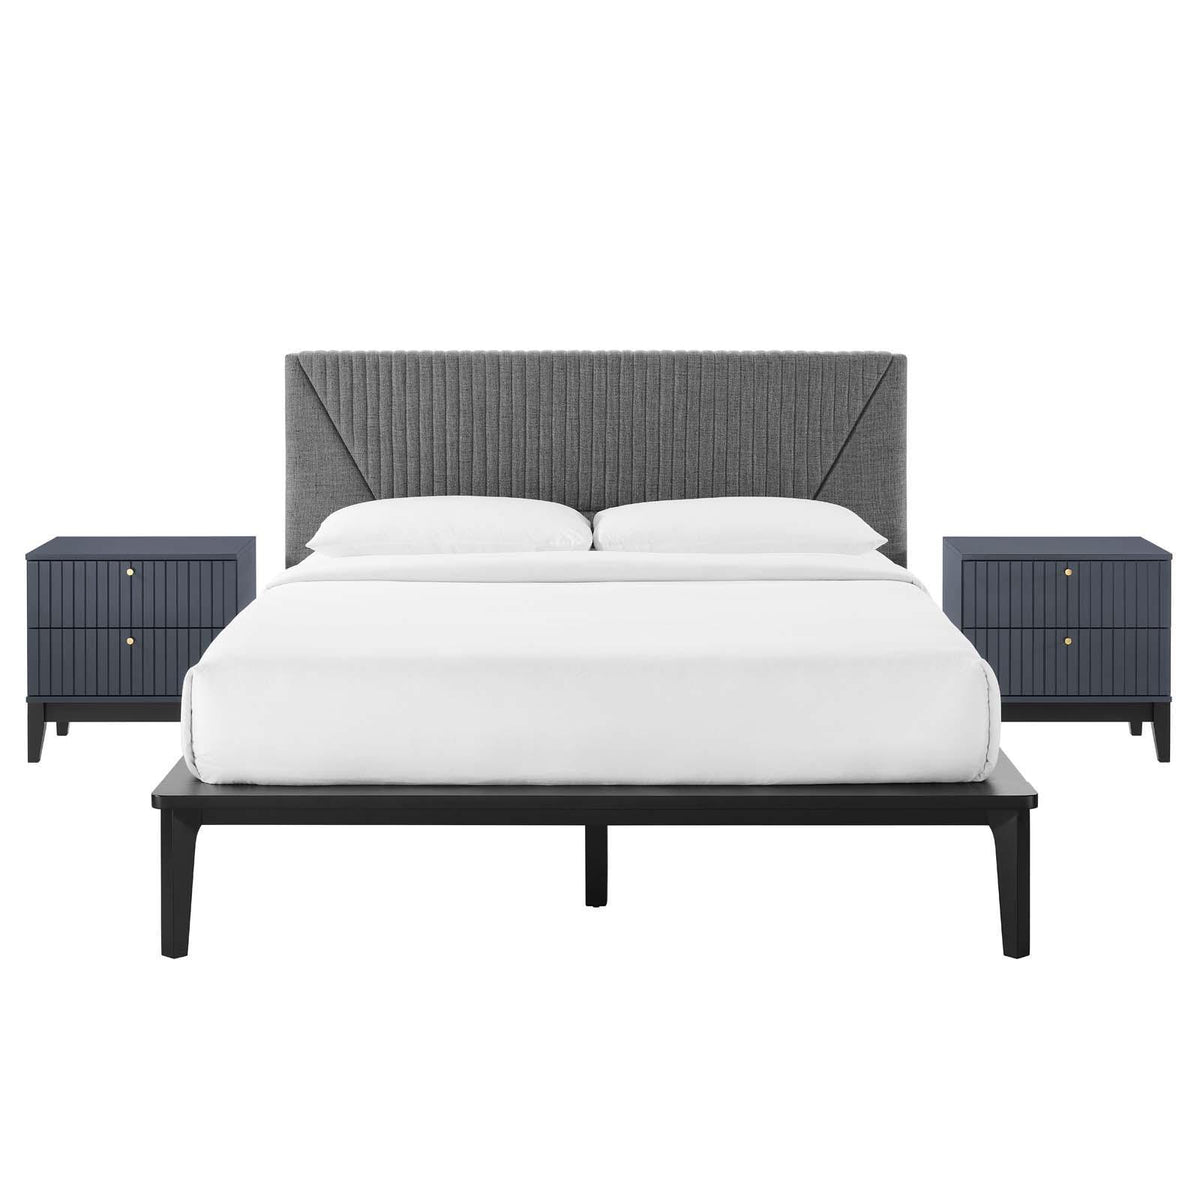 Modway Furniture Modern Dakota 3 Piece Upholstered Bedroom Set - MOD-6961